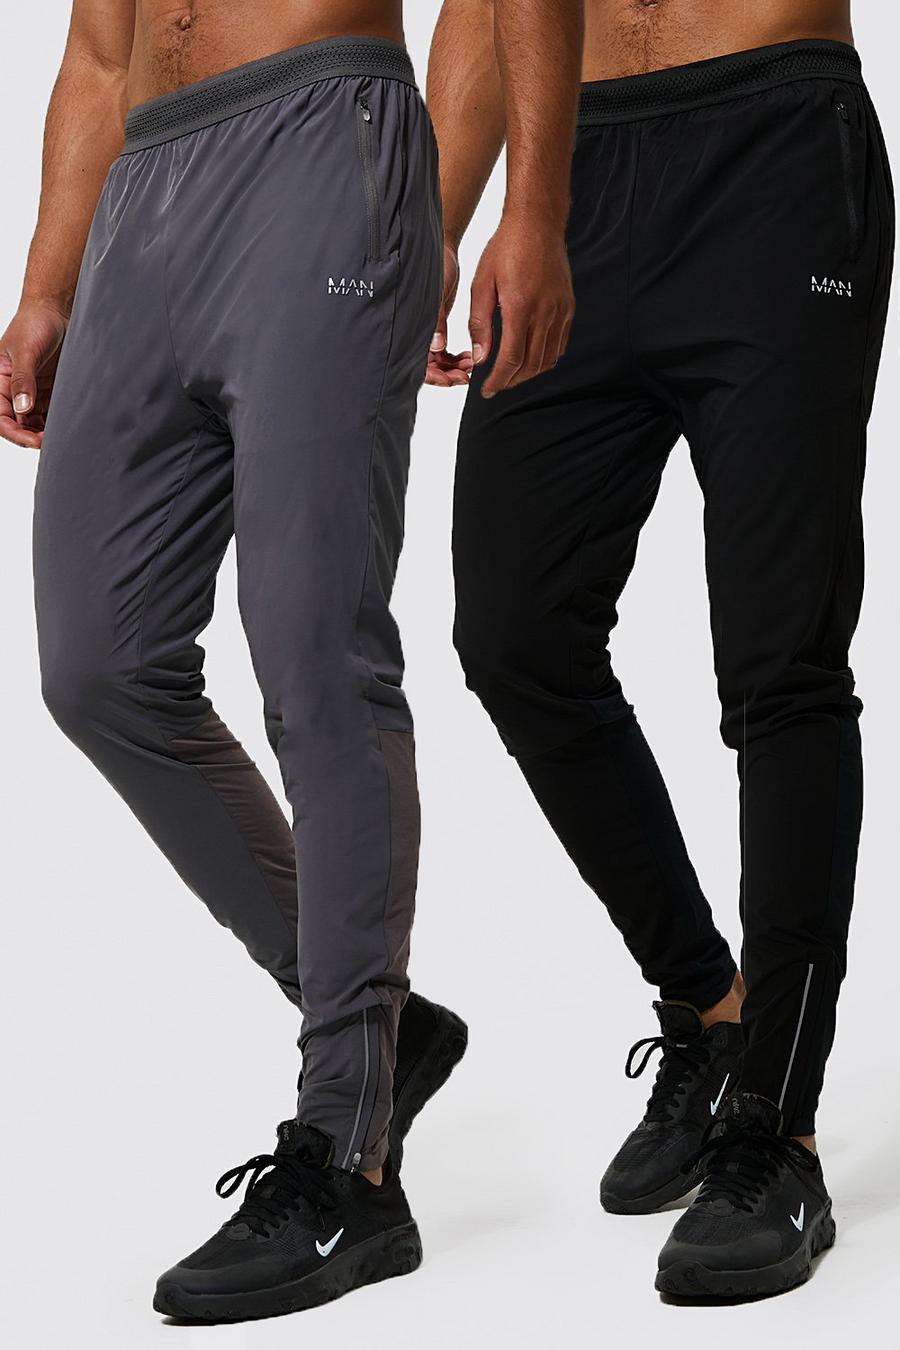 שחור black מארז 2 זוגות מכנסי ריצה ספורטיביים קלילים לחדר הכושר Man, לגברים גבוהים image number 1